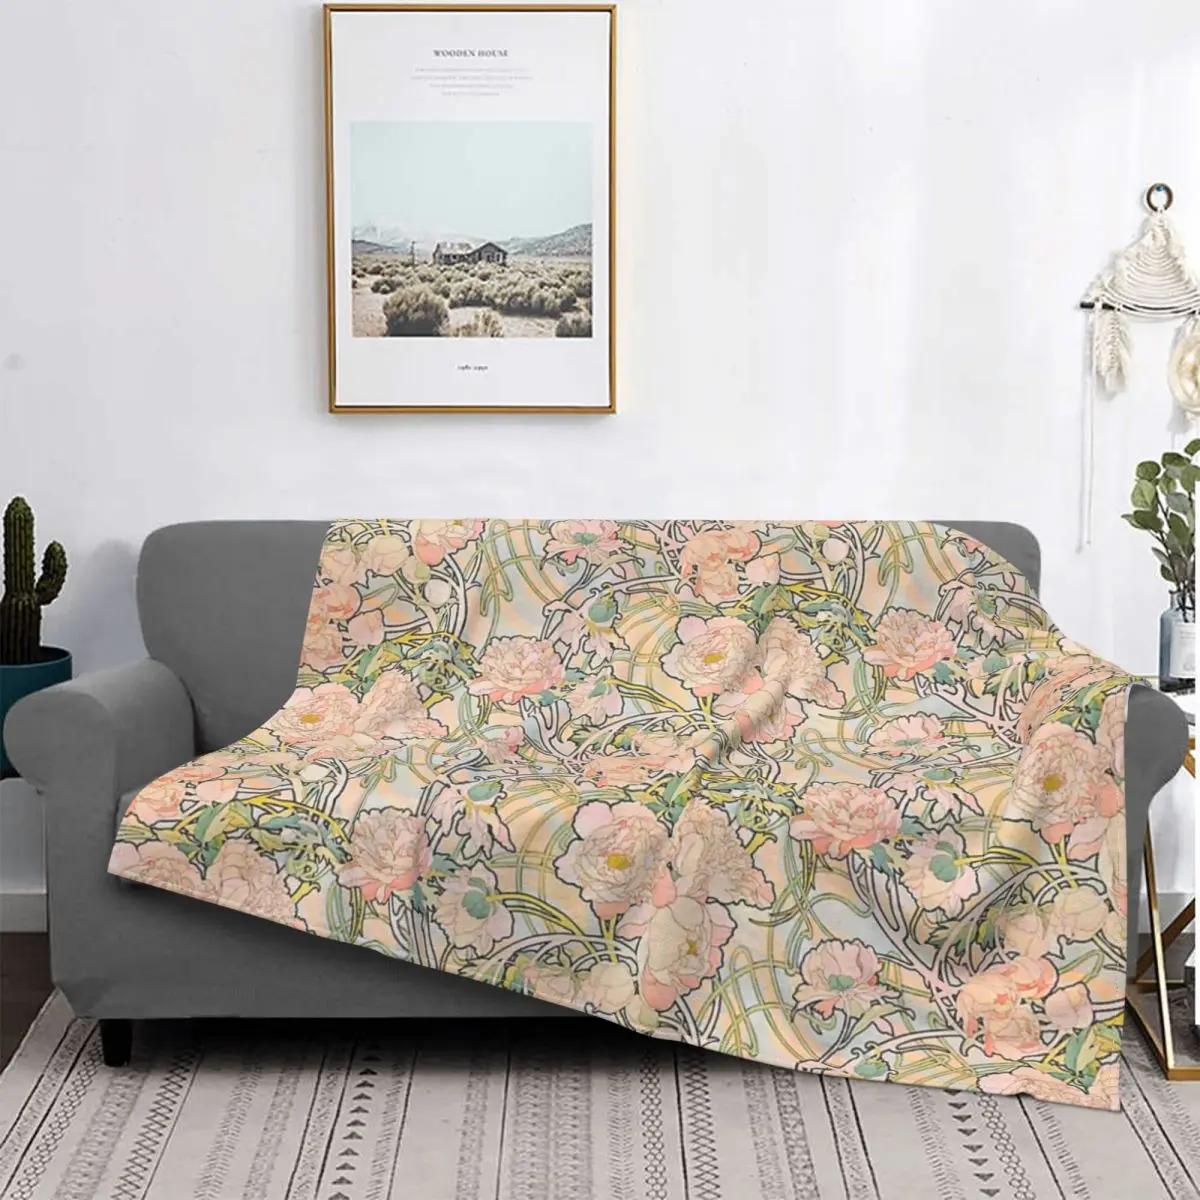 

Розовое одеяло с цветочным узором, покрывало для кровати, клетчатое муслиновое одеяло для пикника, роскошное пляжное полотенце